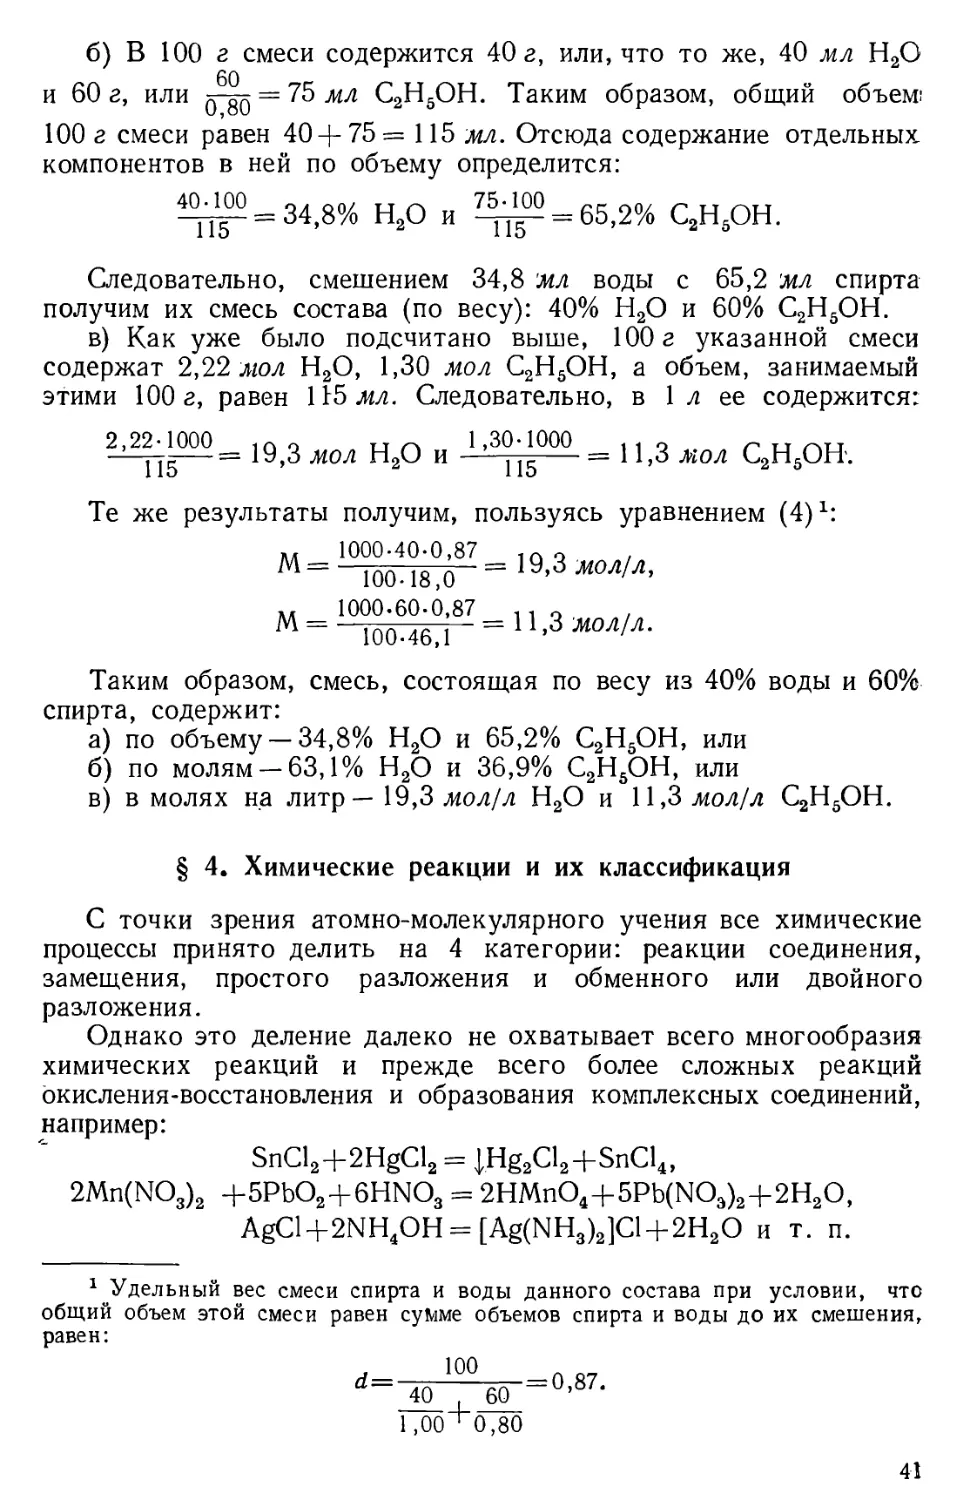 § 4. Химические реакции и их классификация